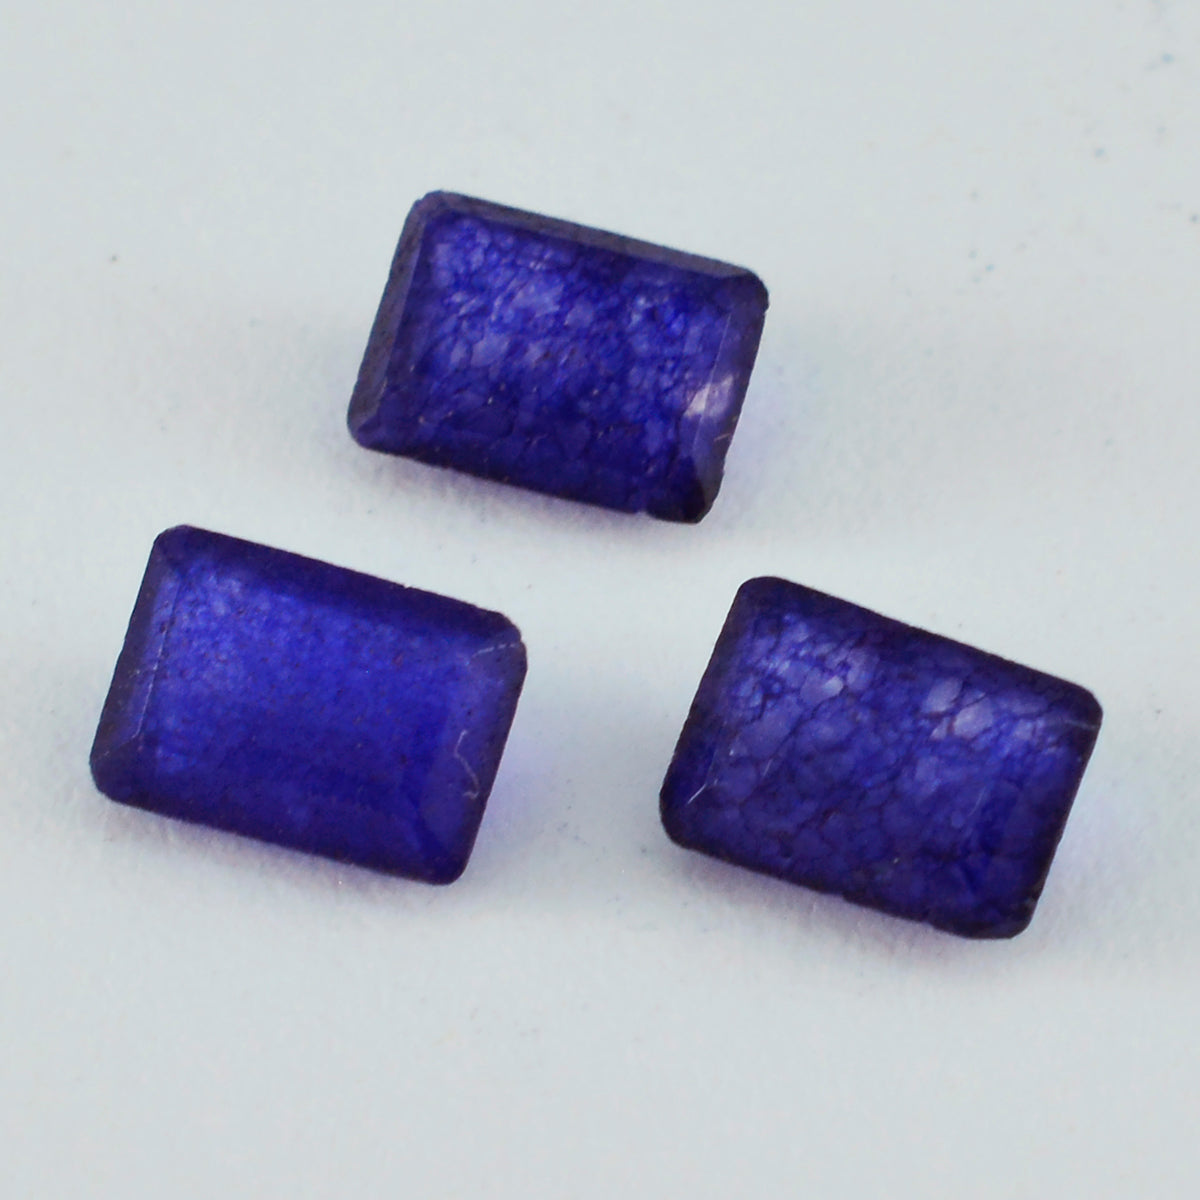 Riyogems 1PC natuurlijke blauwe jaspis gefacetteerd 7x9 mm achthoekige vorm mooie kwaliteitsedelsteen